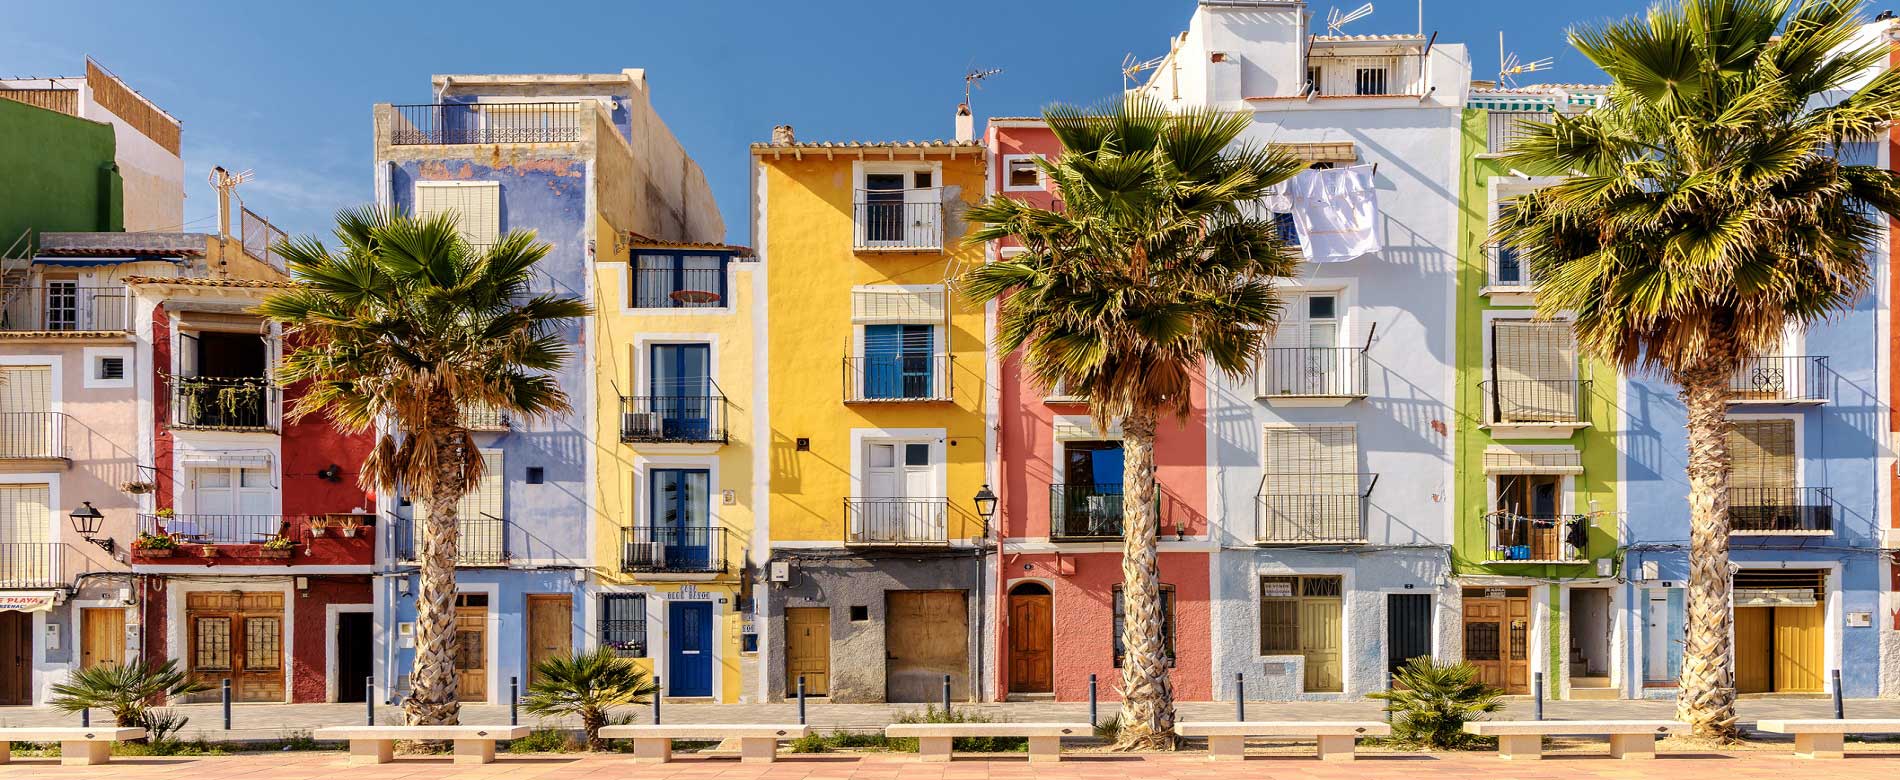 Coloridas casas mediterraneas de playa  en Villajoyosa.